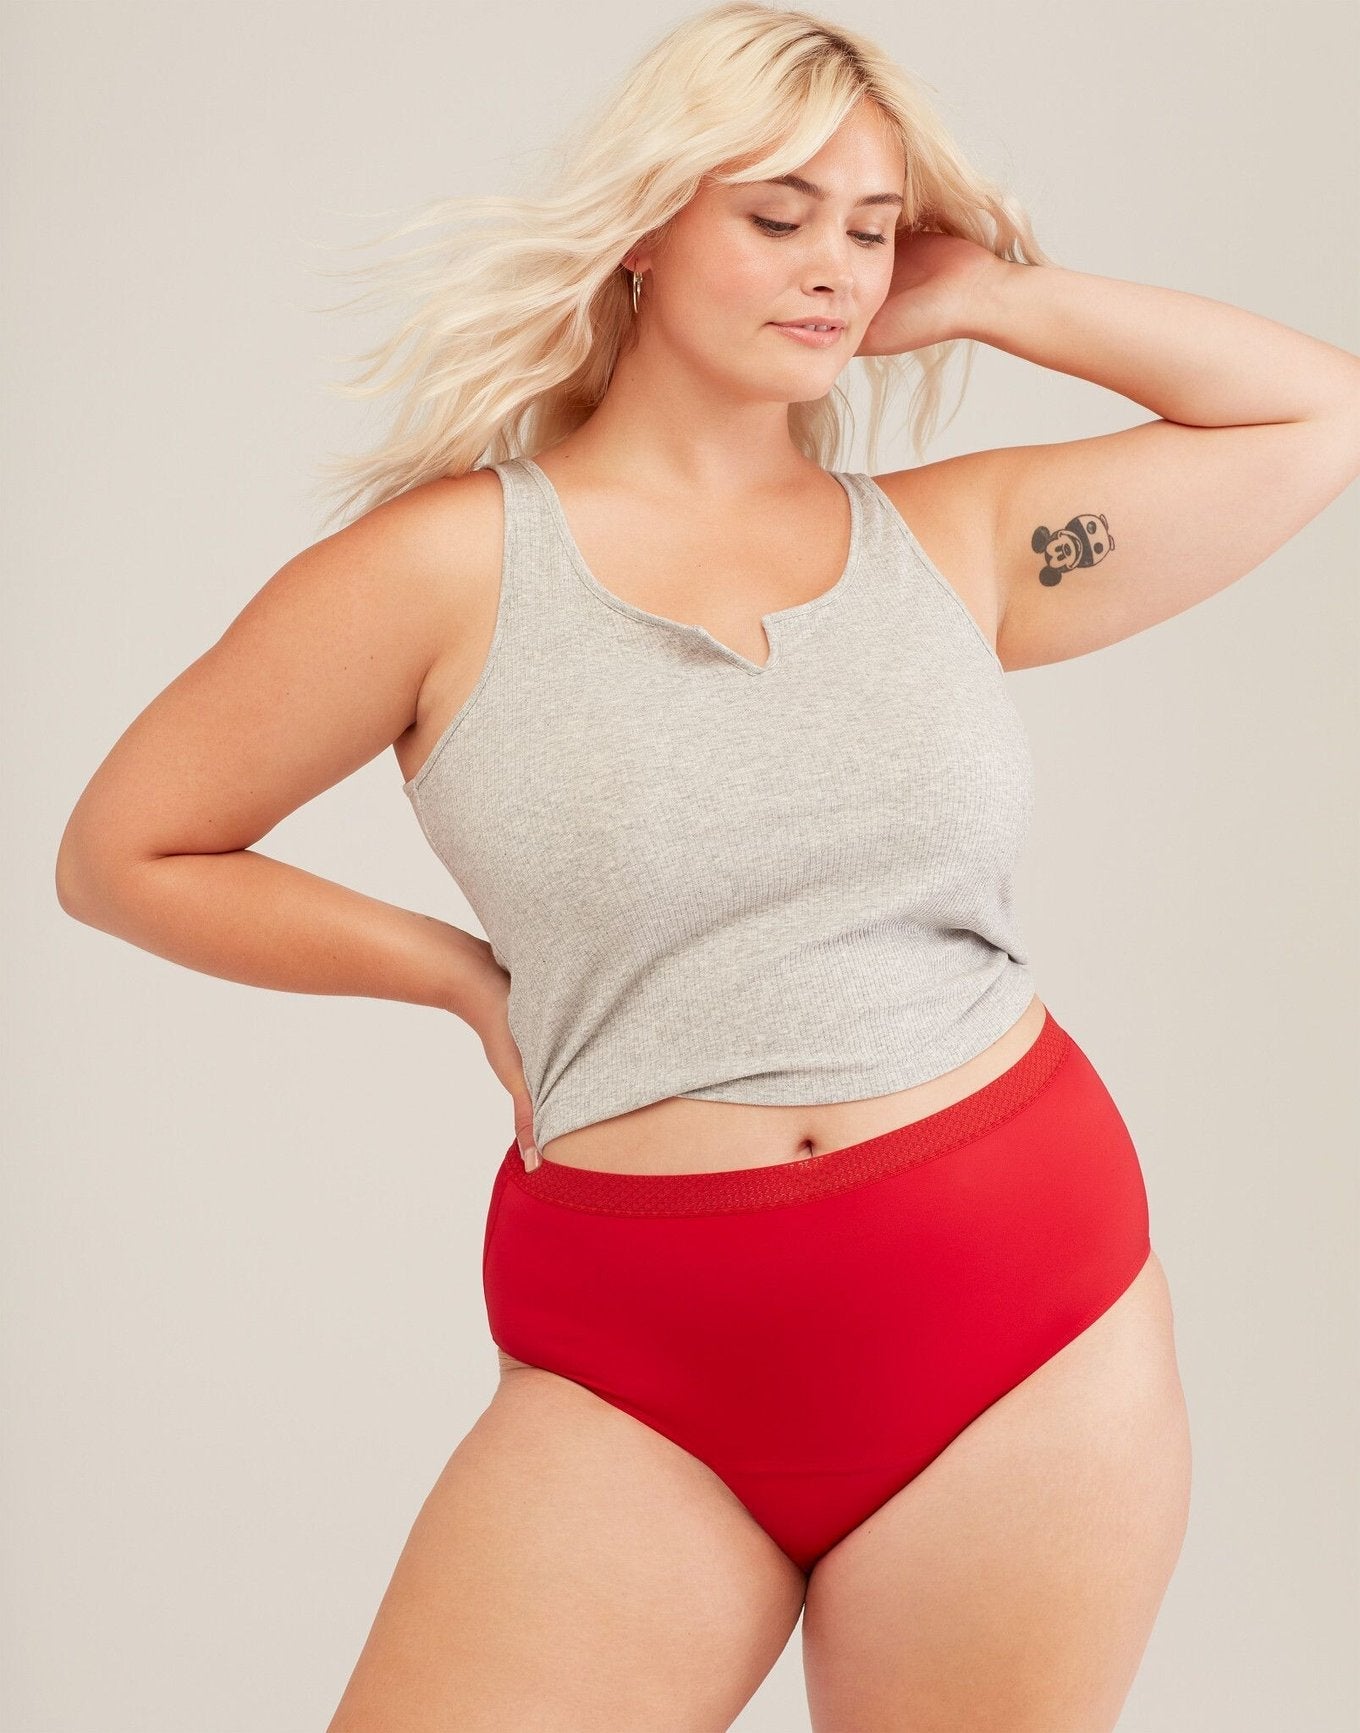 Model wearing red Jess Joyja panties